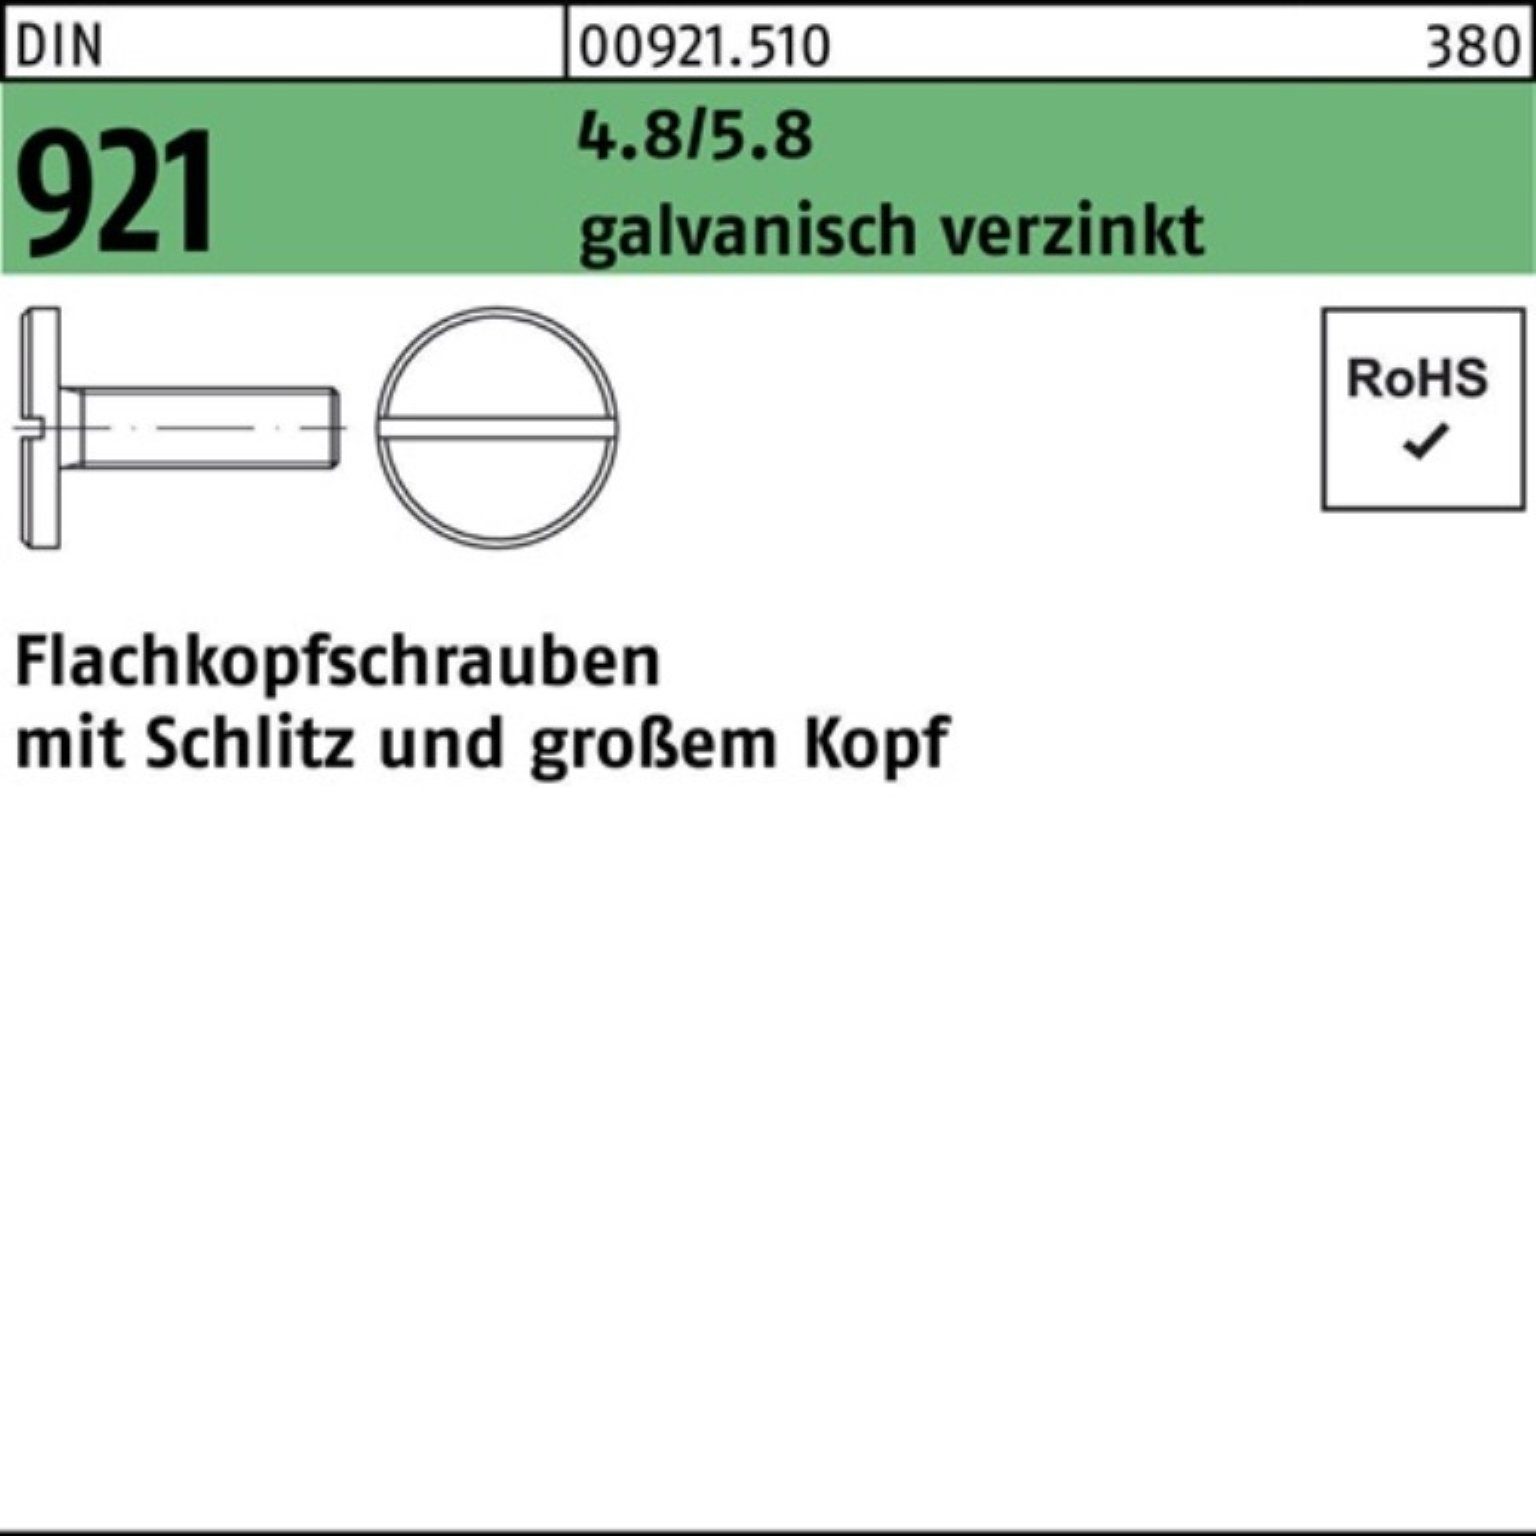 Reyher Schraube 100er 921 galv.verz M10x Flachkopfschraube 16 DIN Schlitz Pack 4.8/5.8